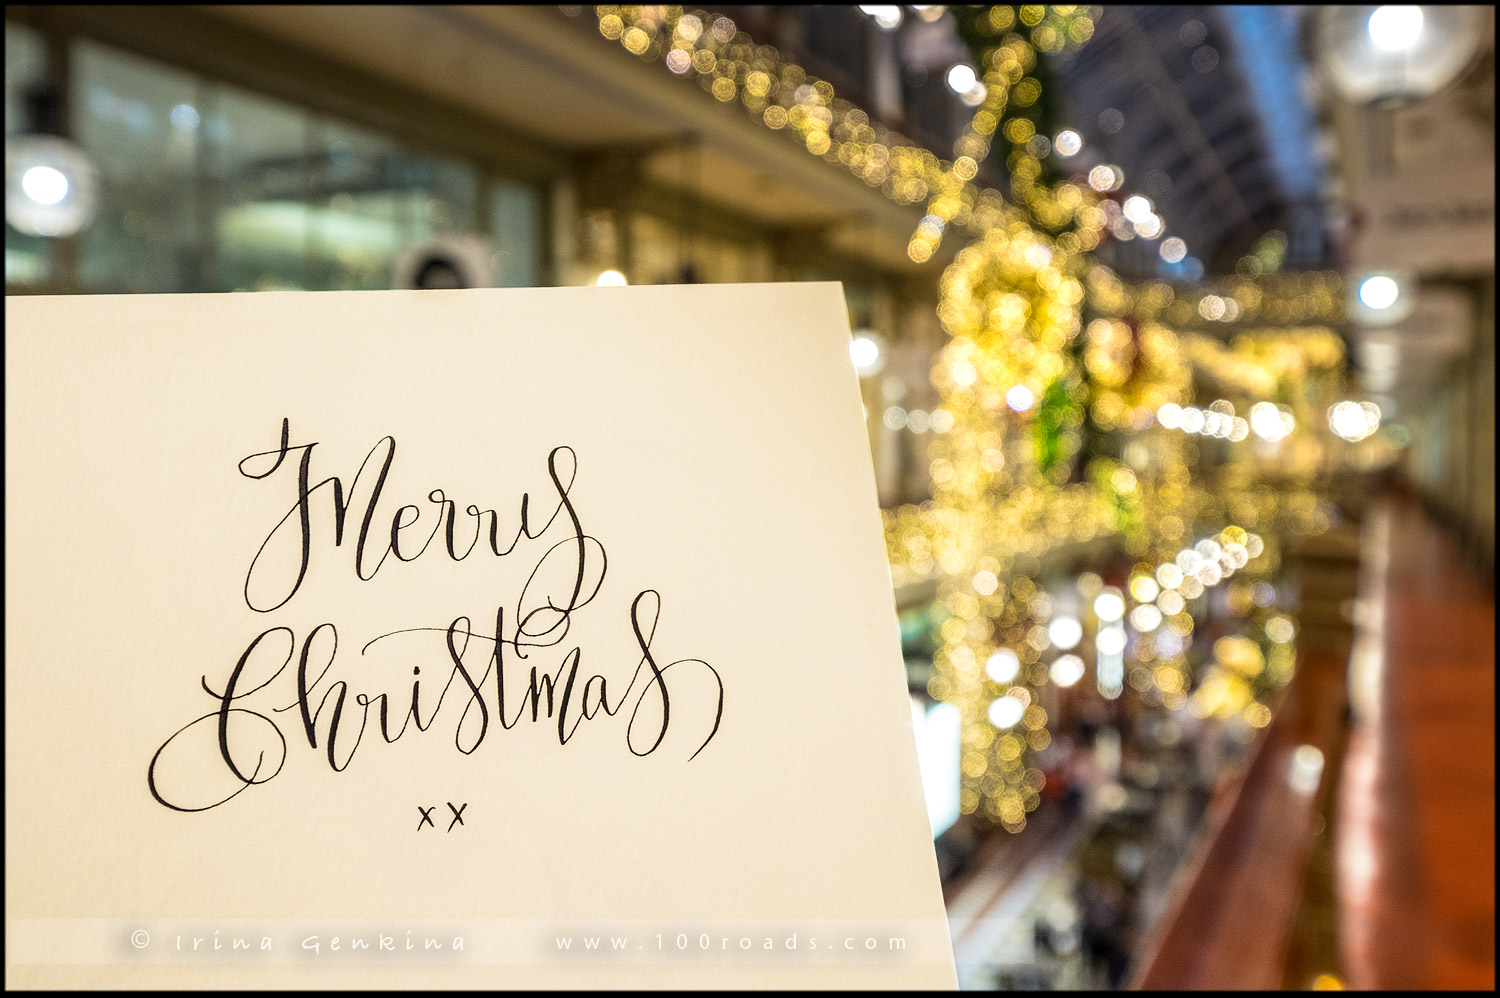 Рождество, Christmas, Xmas, магазины, shops, shopping, Сидней, Sydney, Австралия, Australia